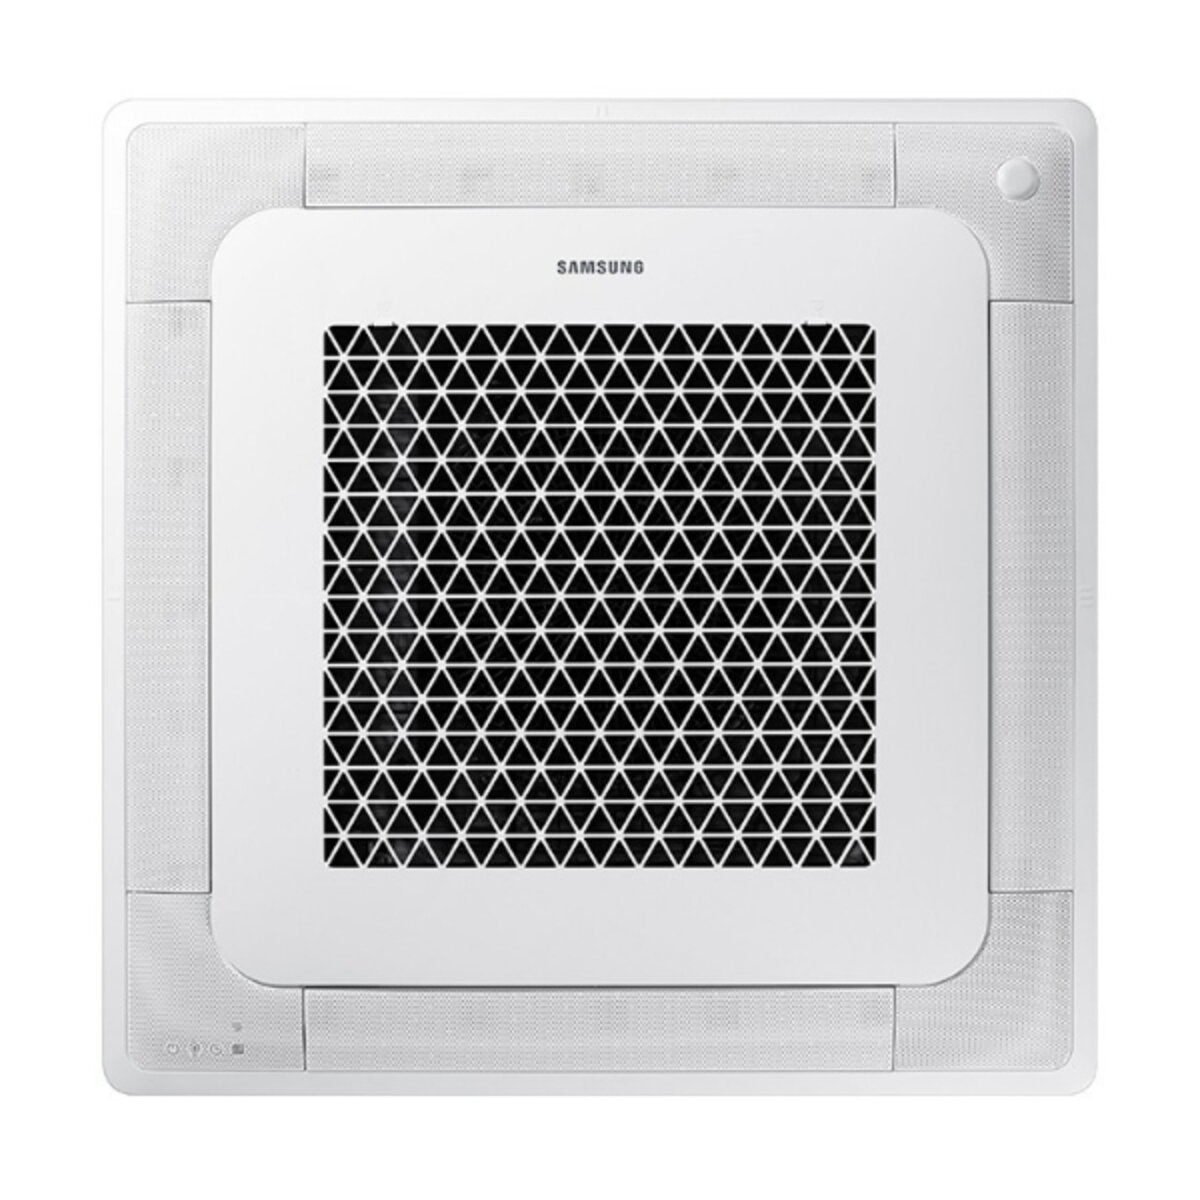 Samsung Air conditioner Windfree 4-way penta split 9000 + 9000 + 12000 + 12000 + 12000 BTU inverter A ++ outdoor unit 10.0 kW